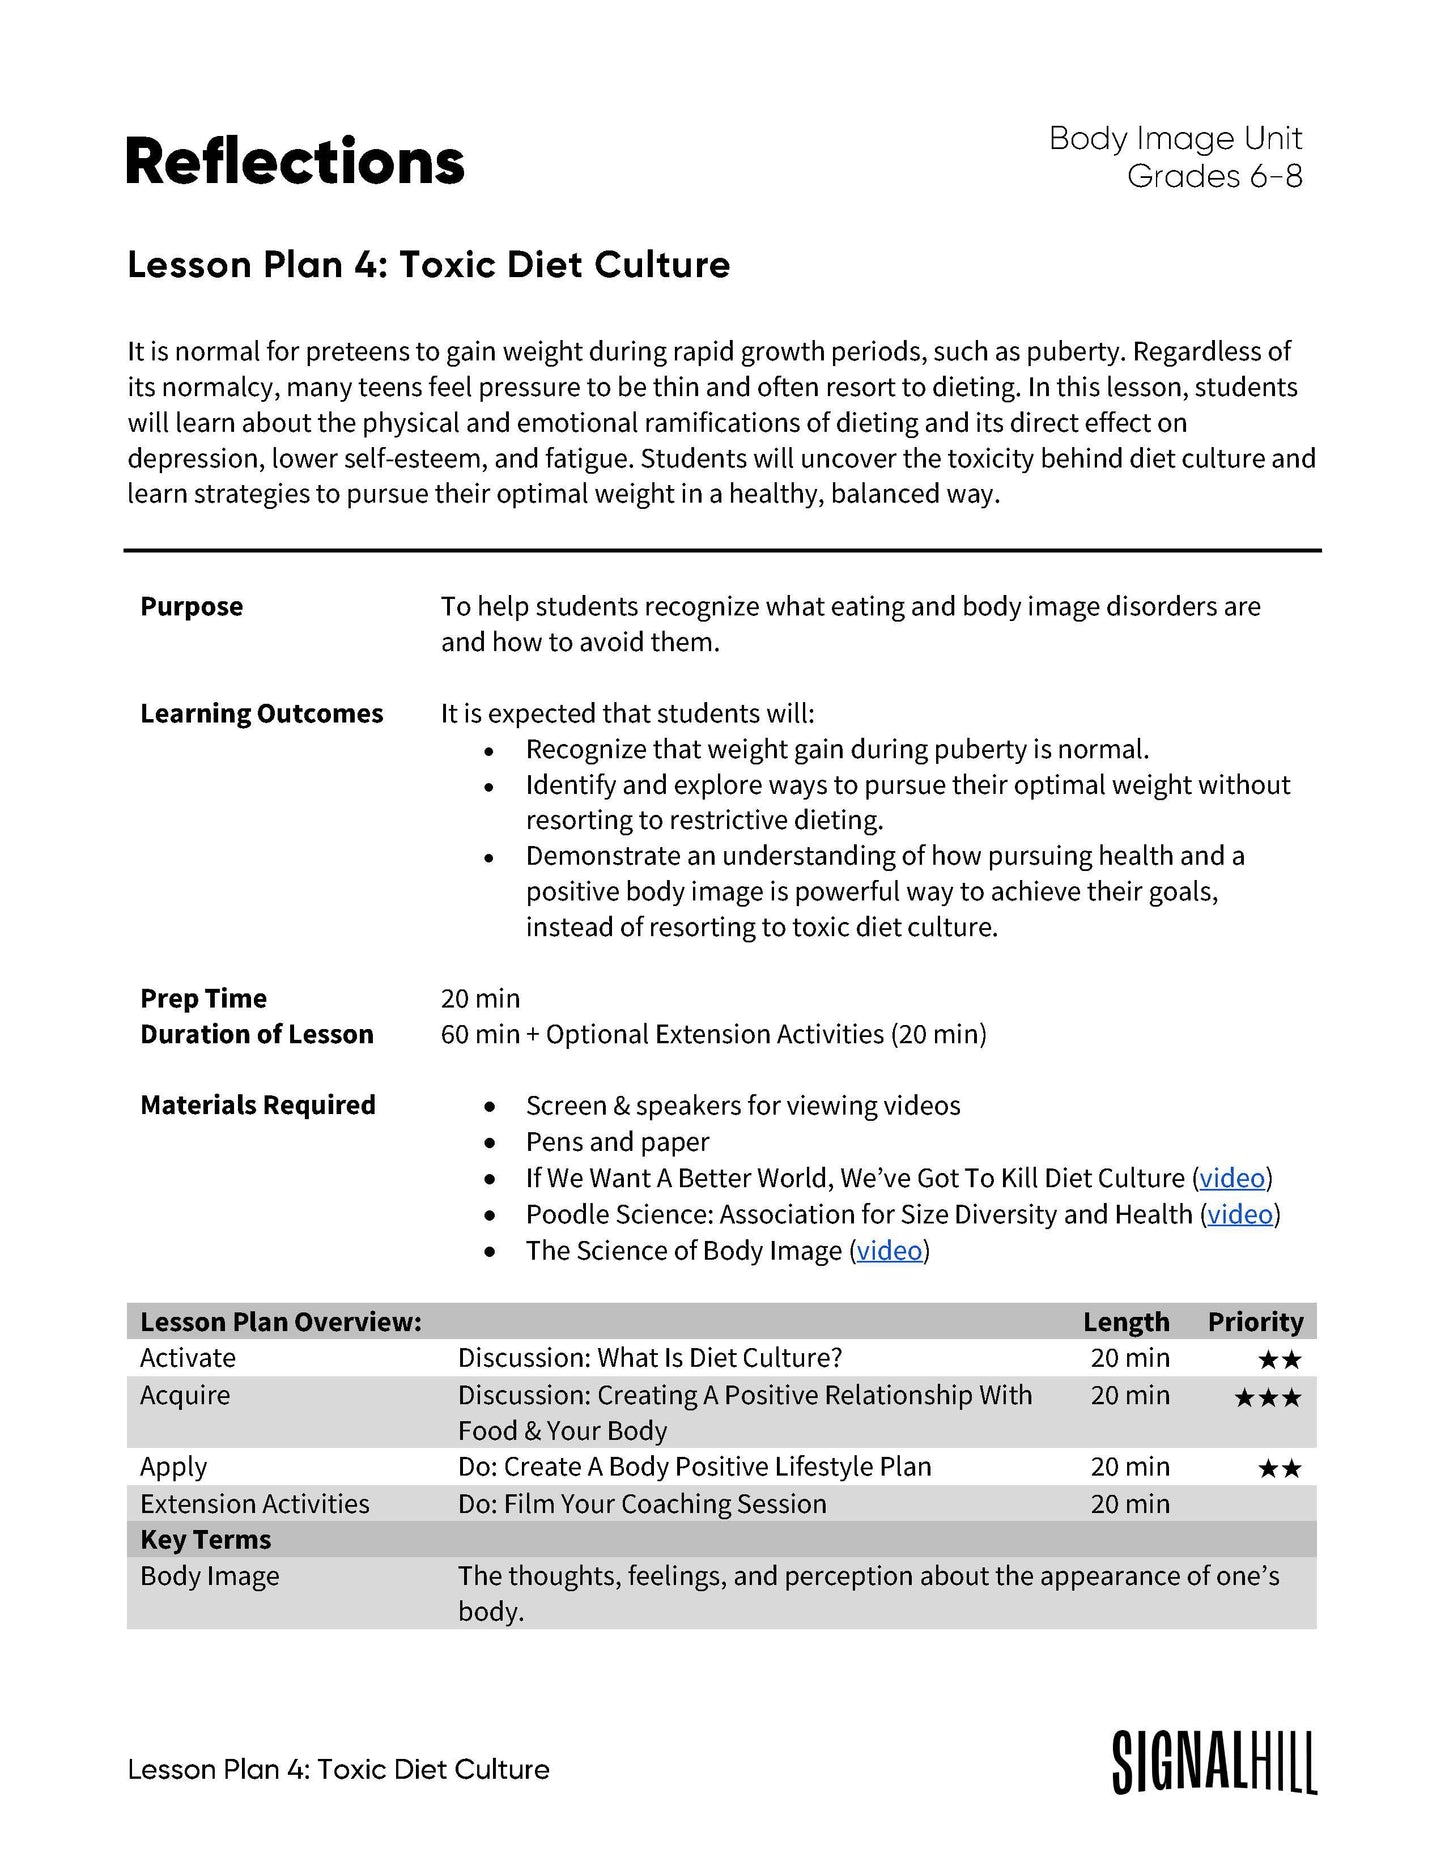 Reflections - Lesson Plan Bundle (4 Lesson Plans)